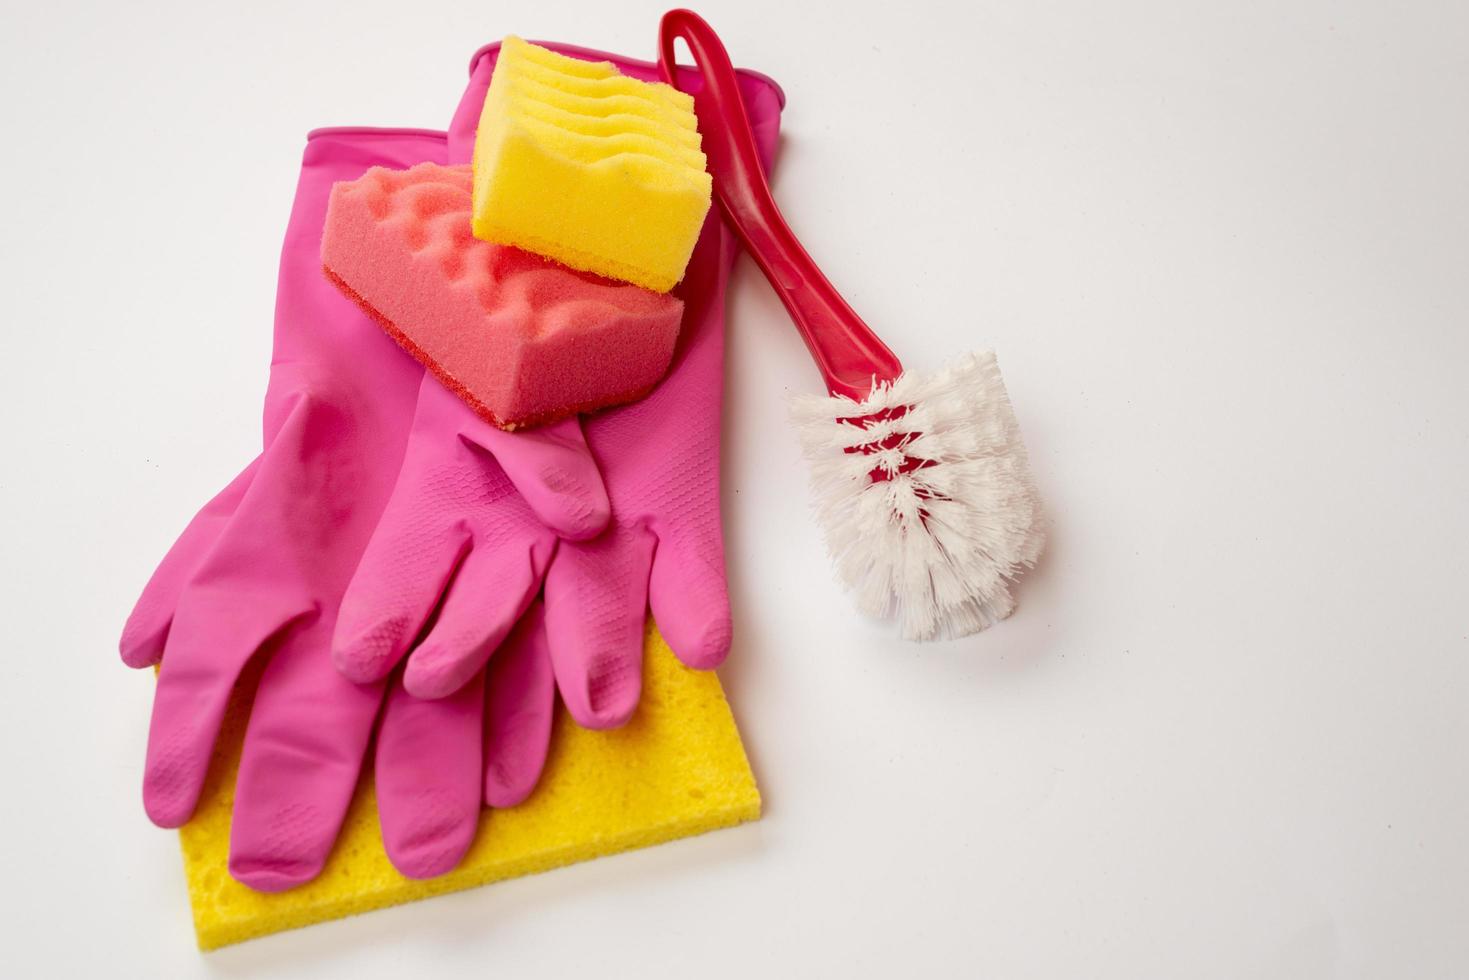 esponja, cepillo doméstico, guantes de látex sobre un fondo blanco. concepto de servicio de limpieza foto